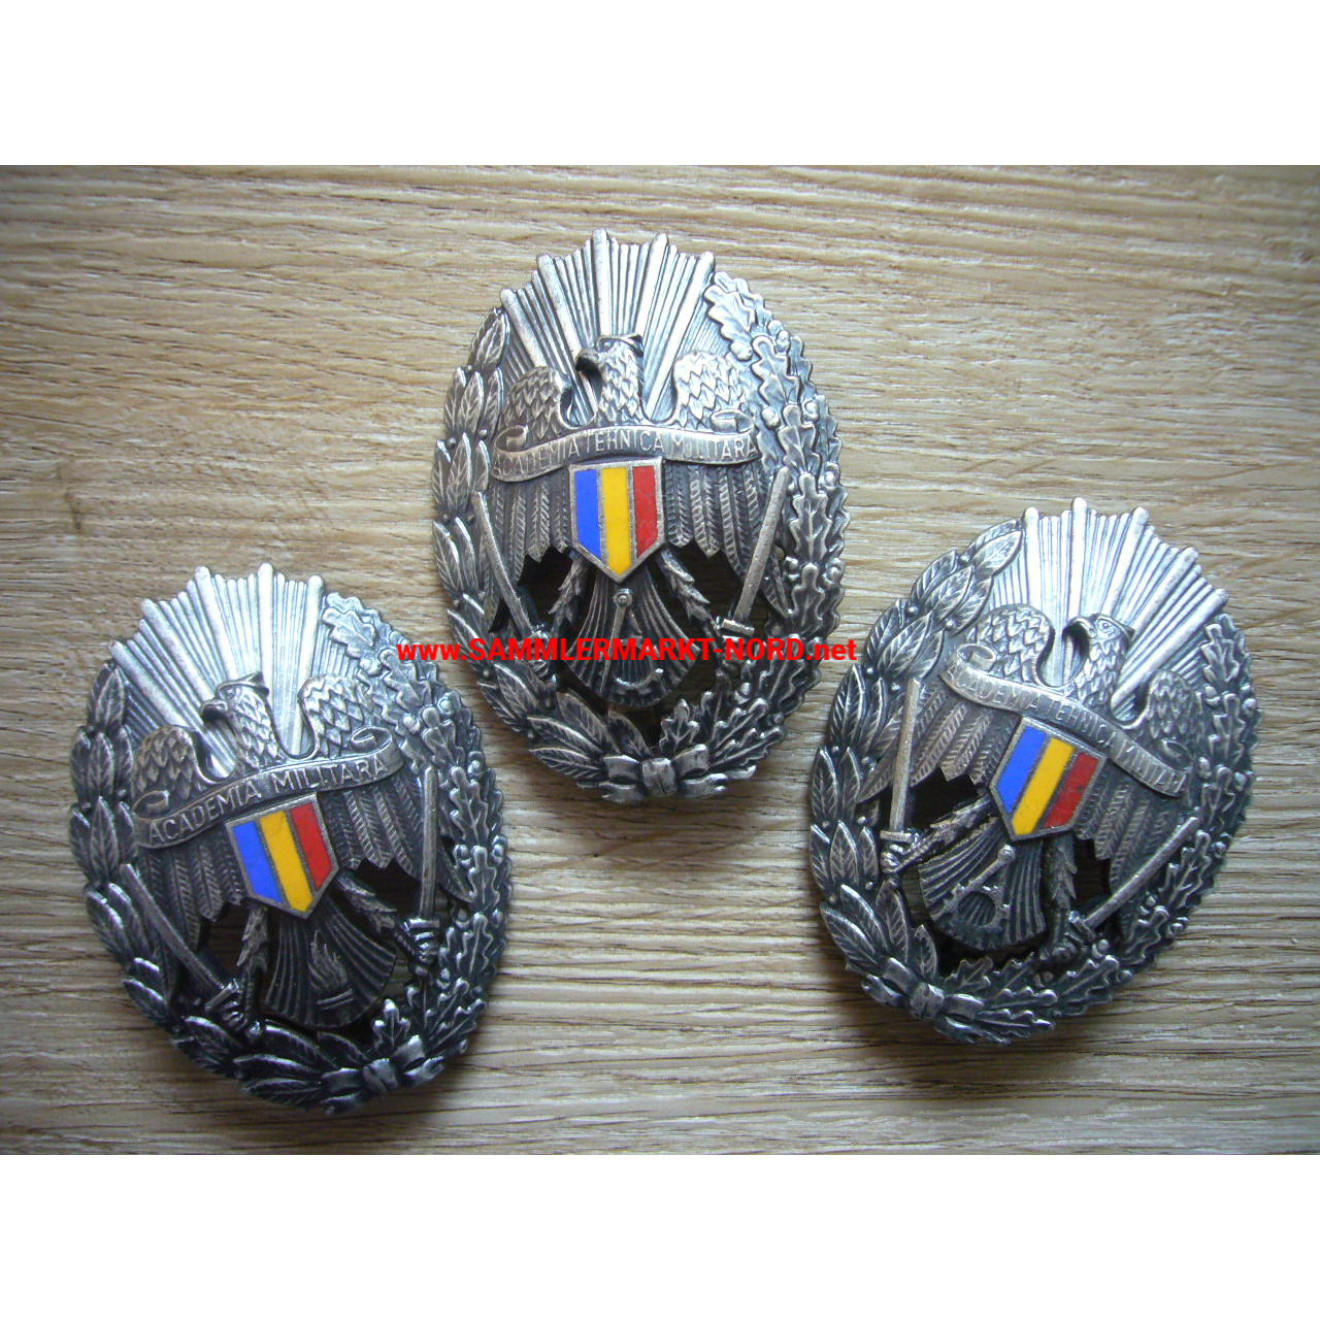 Rumänien - Academia Militara - Absolventenabzeichen der Militärakademie